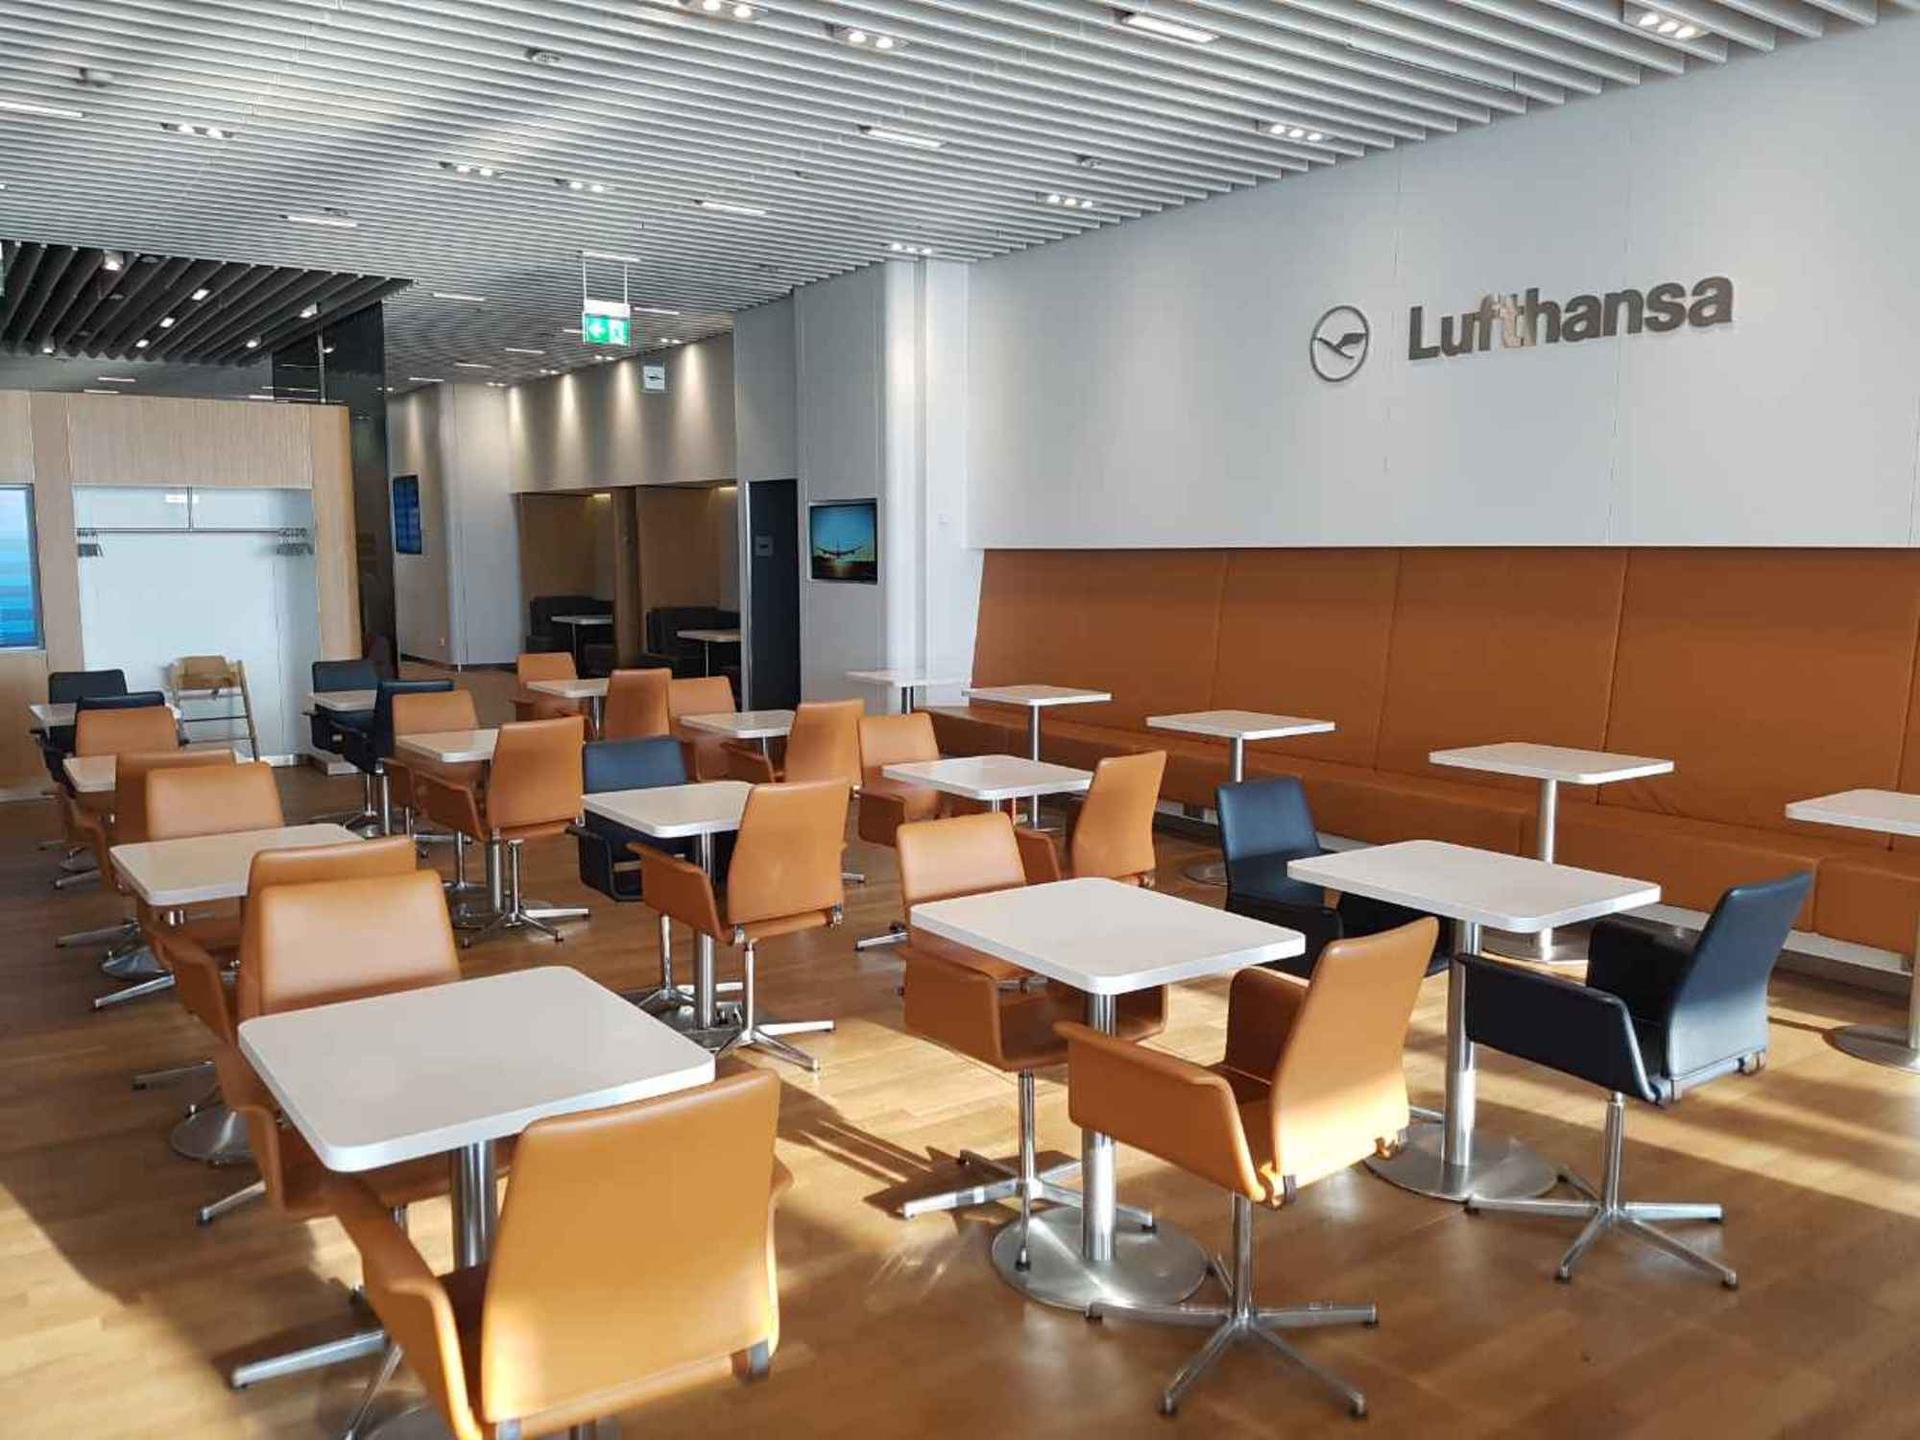 Lufthansa Senator Lounge (Non-Schengen) image 1 of 14